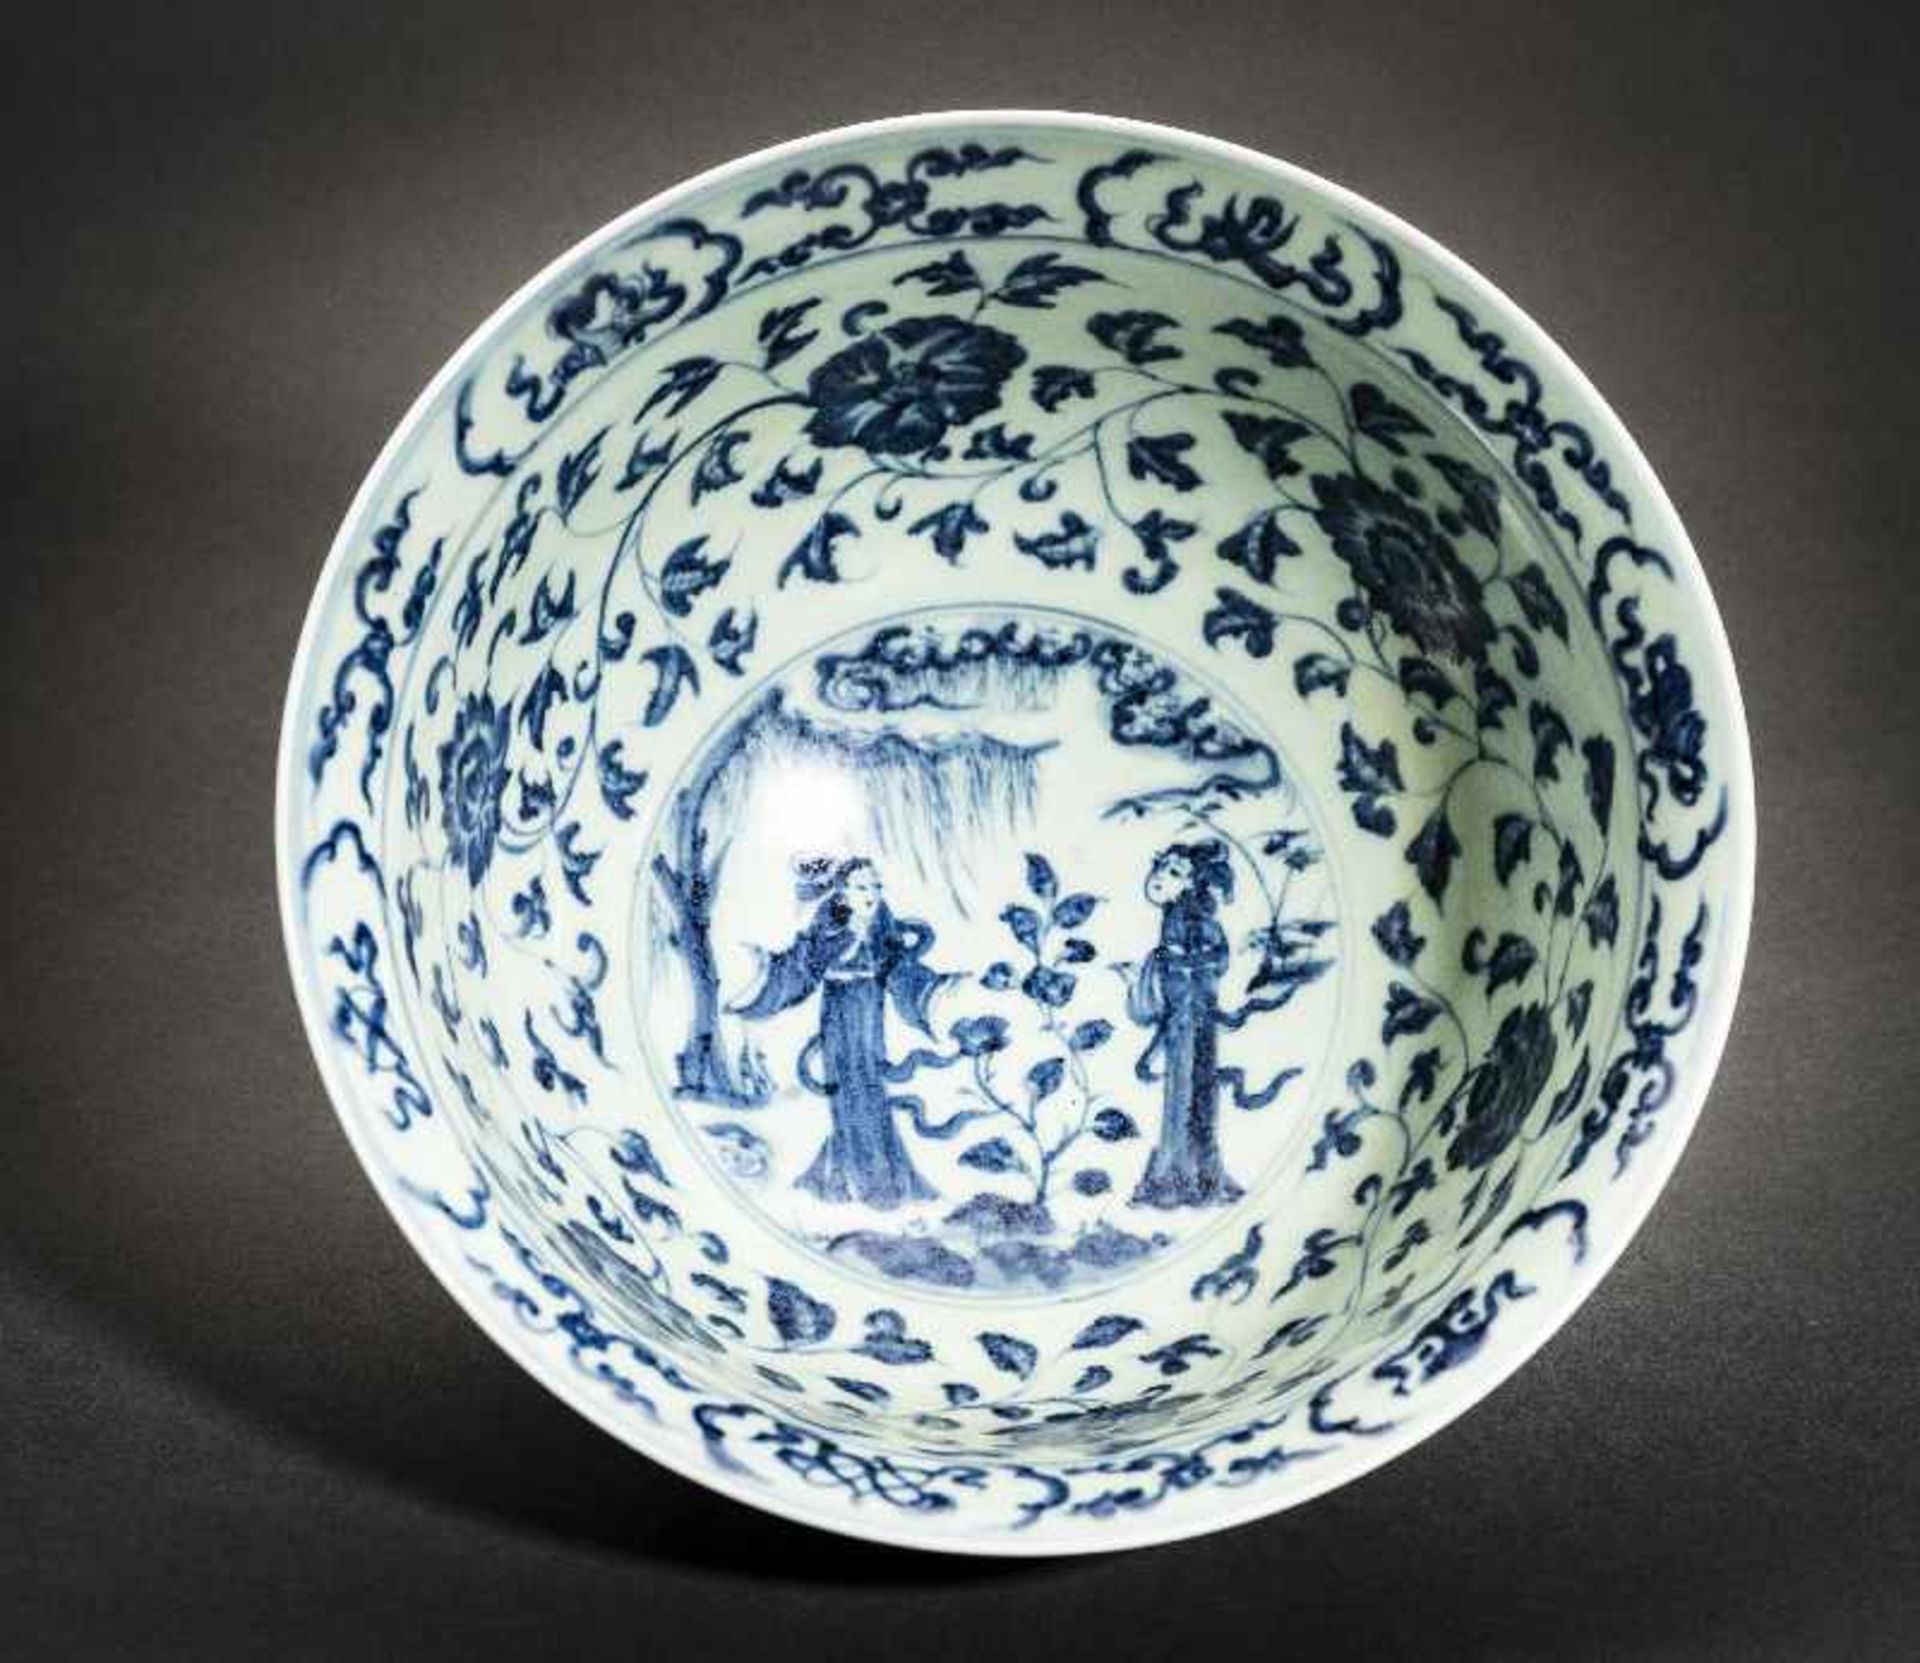 TIEFE SCHALE MIT FEEN UND UNSTERBLICHEN Blauweißes Porzellan. China, Die im Stil der Ming-Zeit - Image 4 of 5